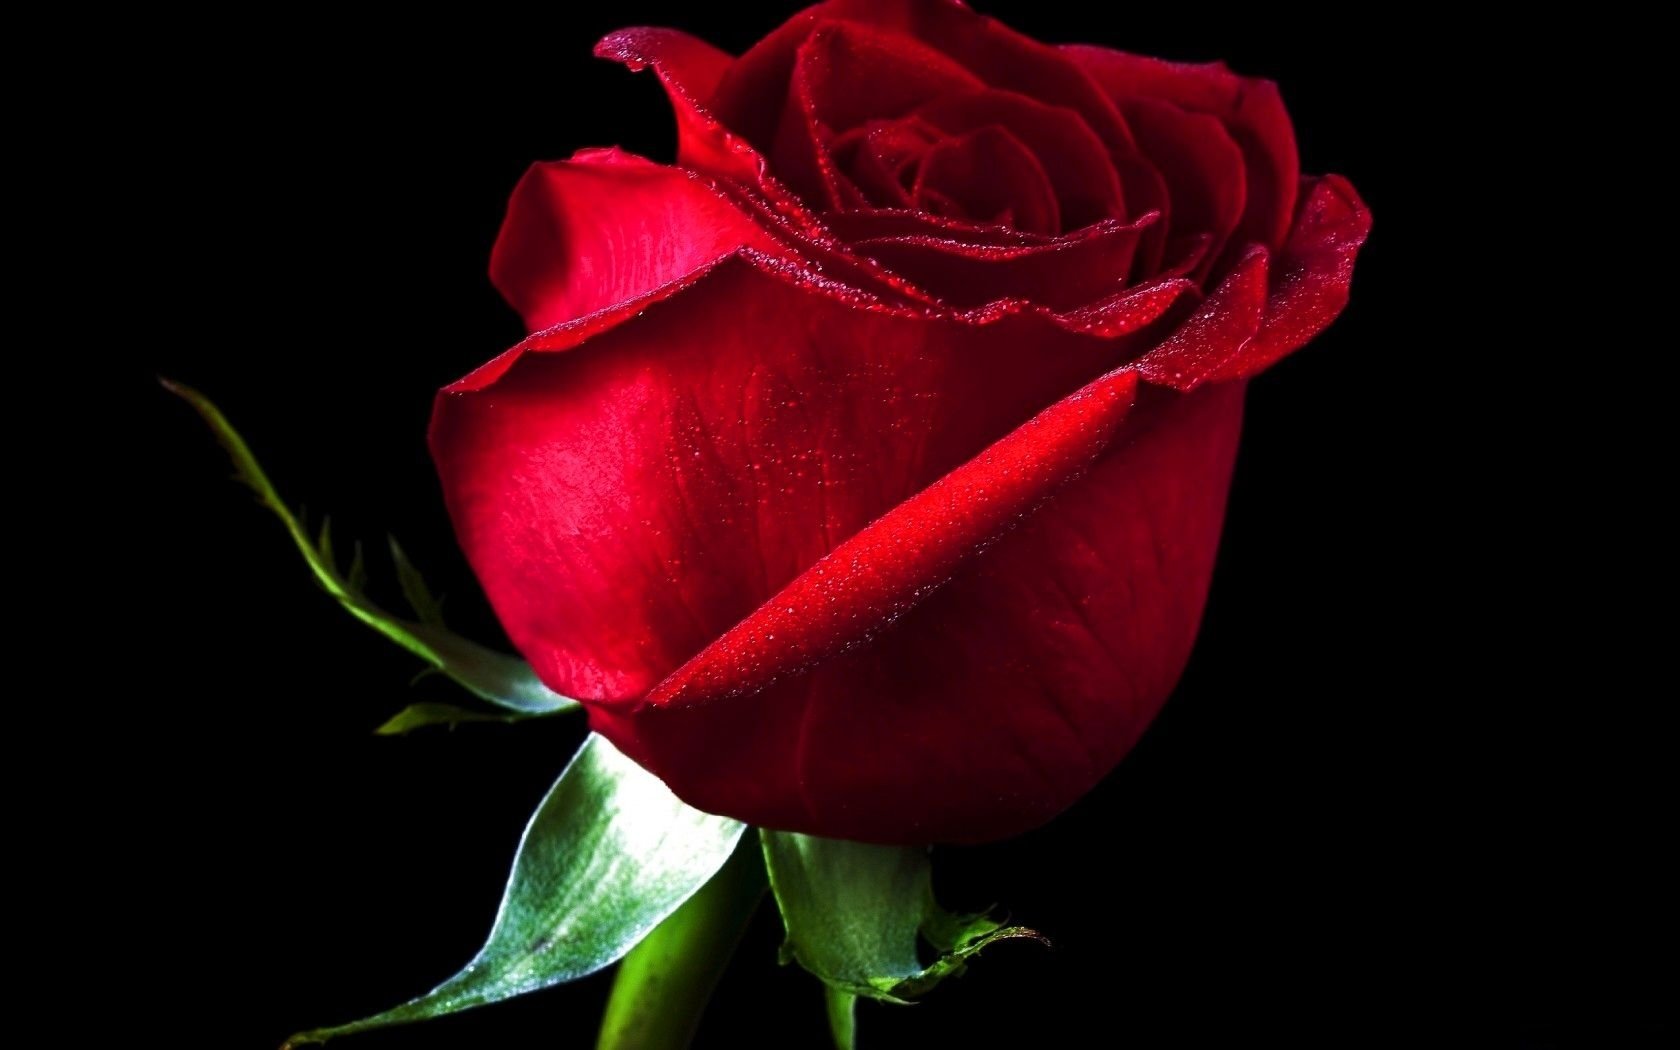 Gul yuzim. Красные розы. Цветы розы красные. Красивые розы на черном фоне. Красные розы на темном фоне.